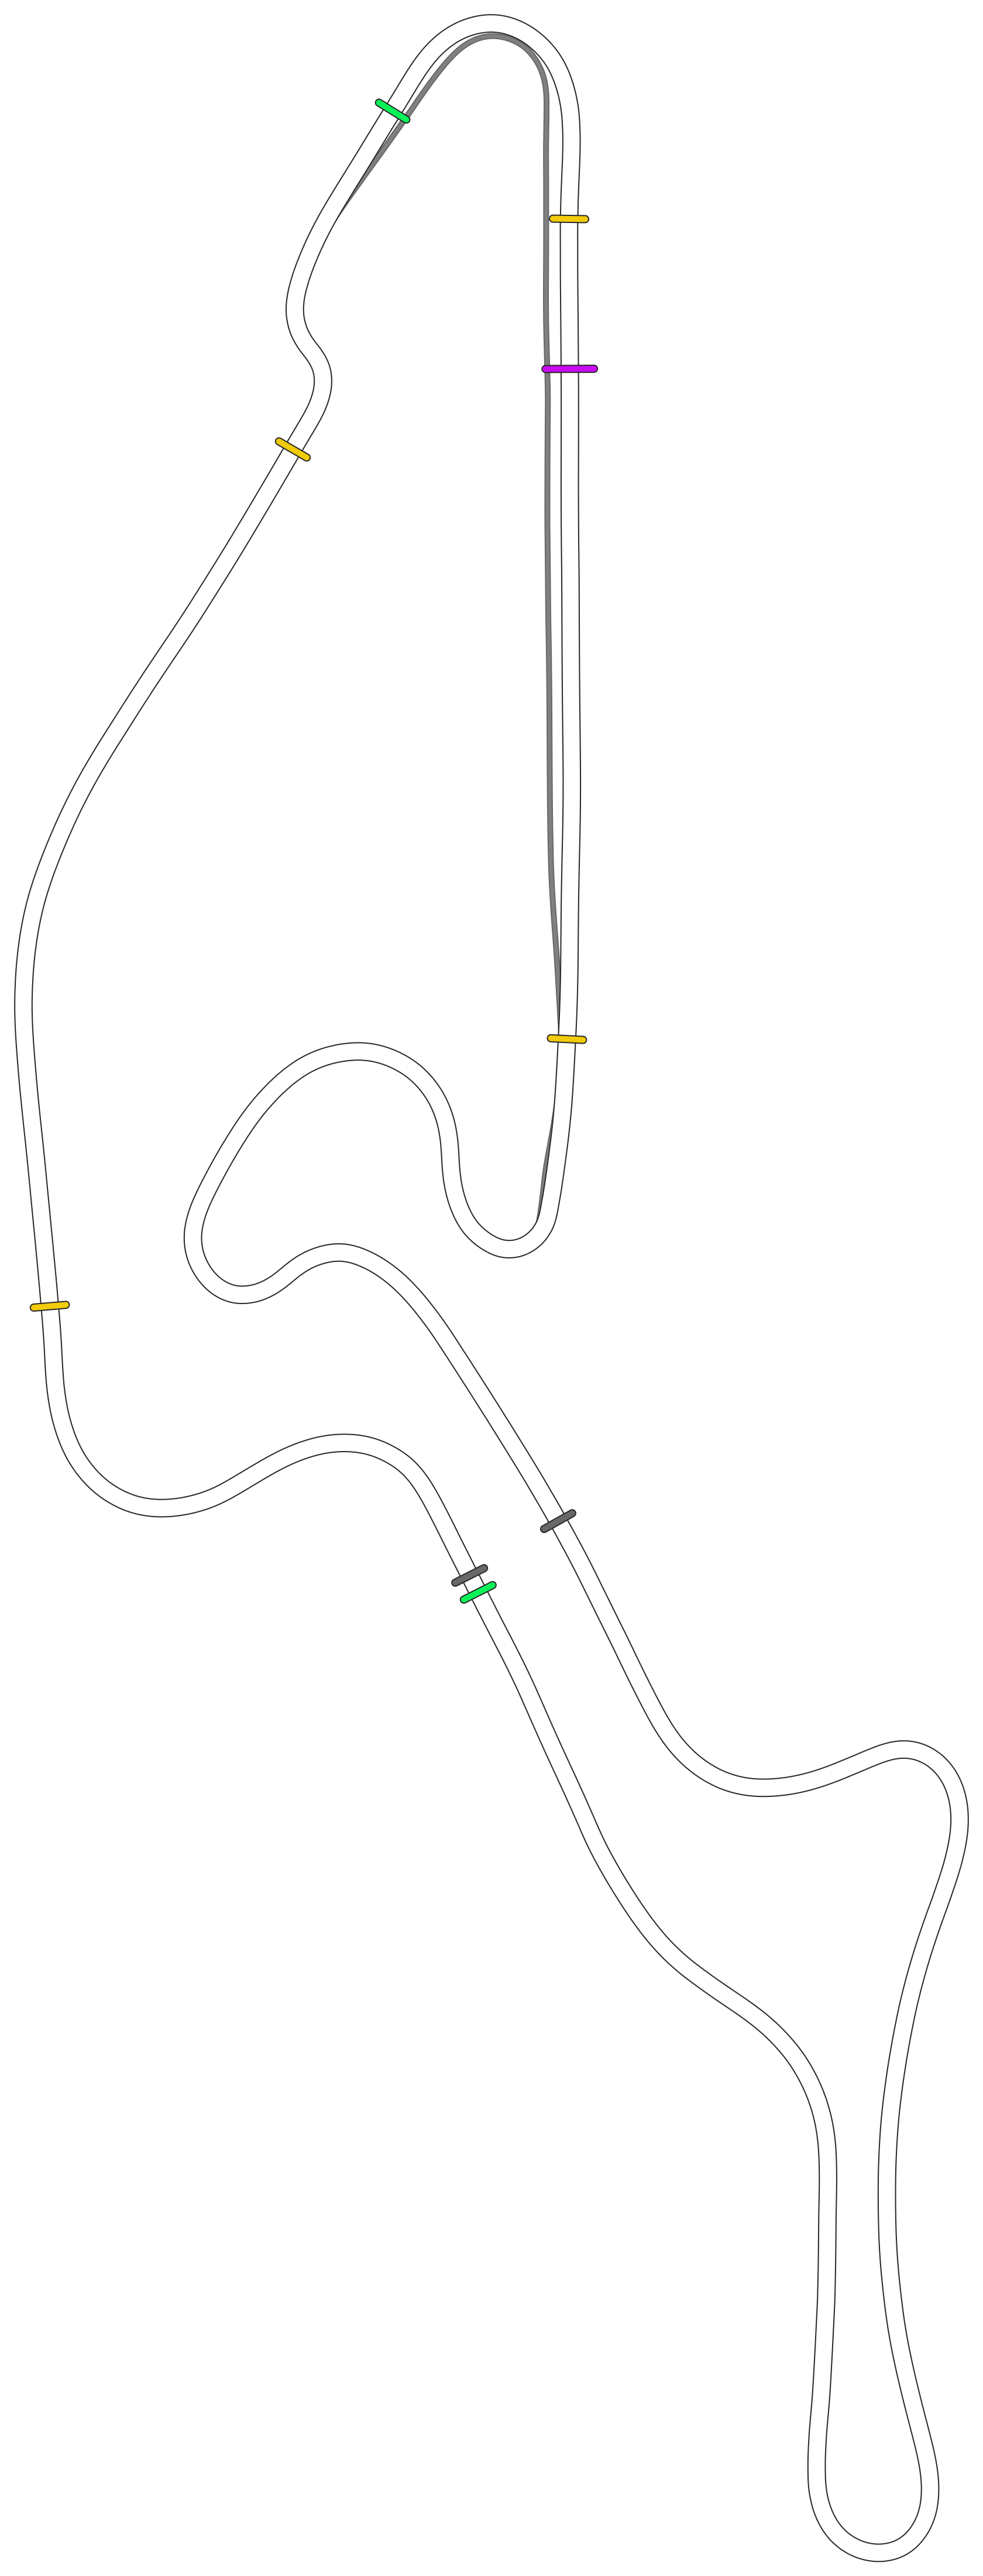 Nurburgring - GP (Formula) OSRW